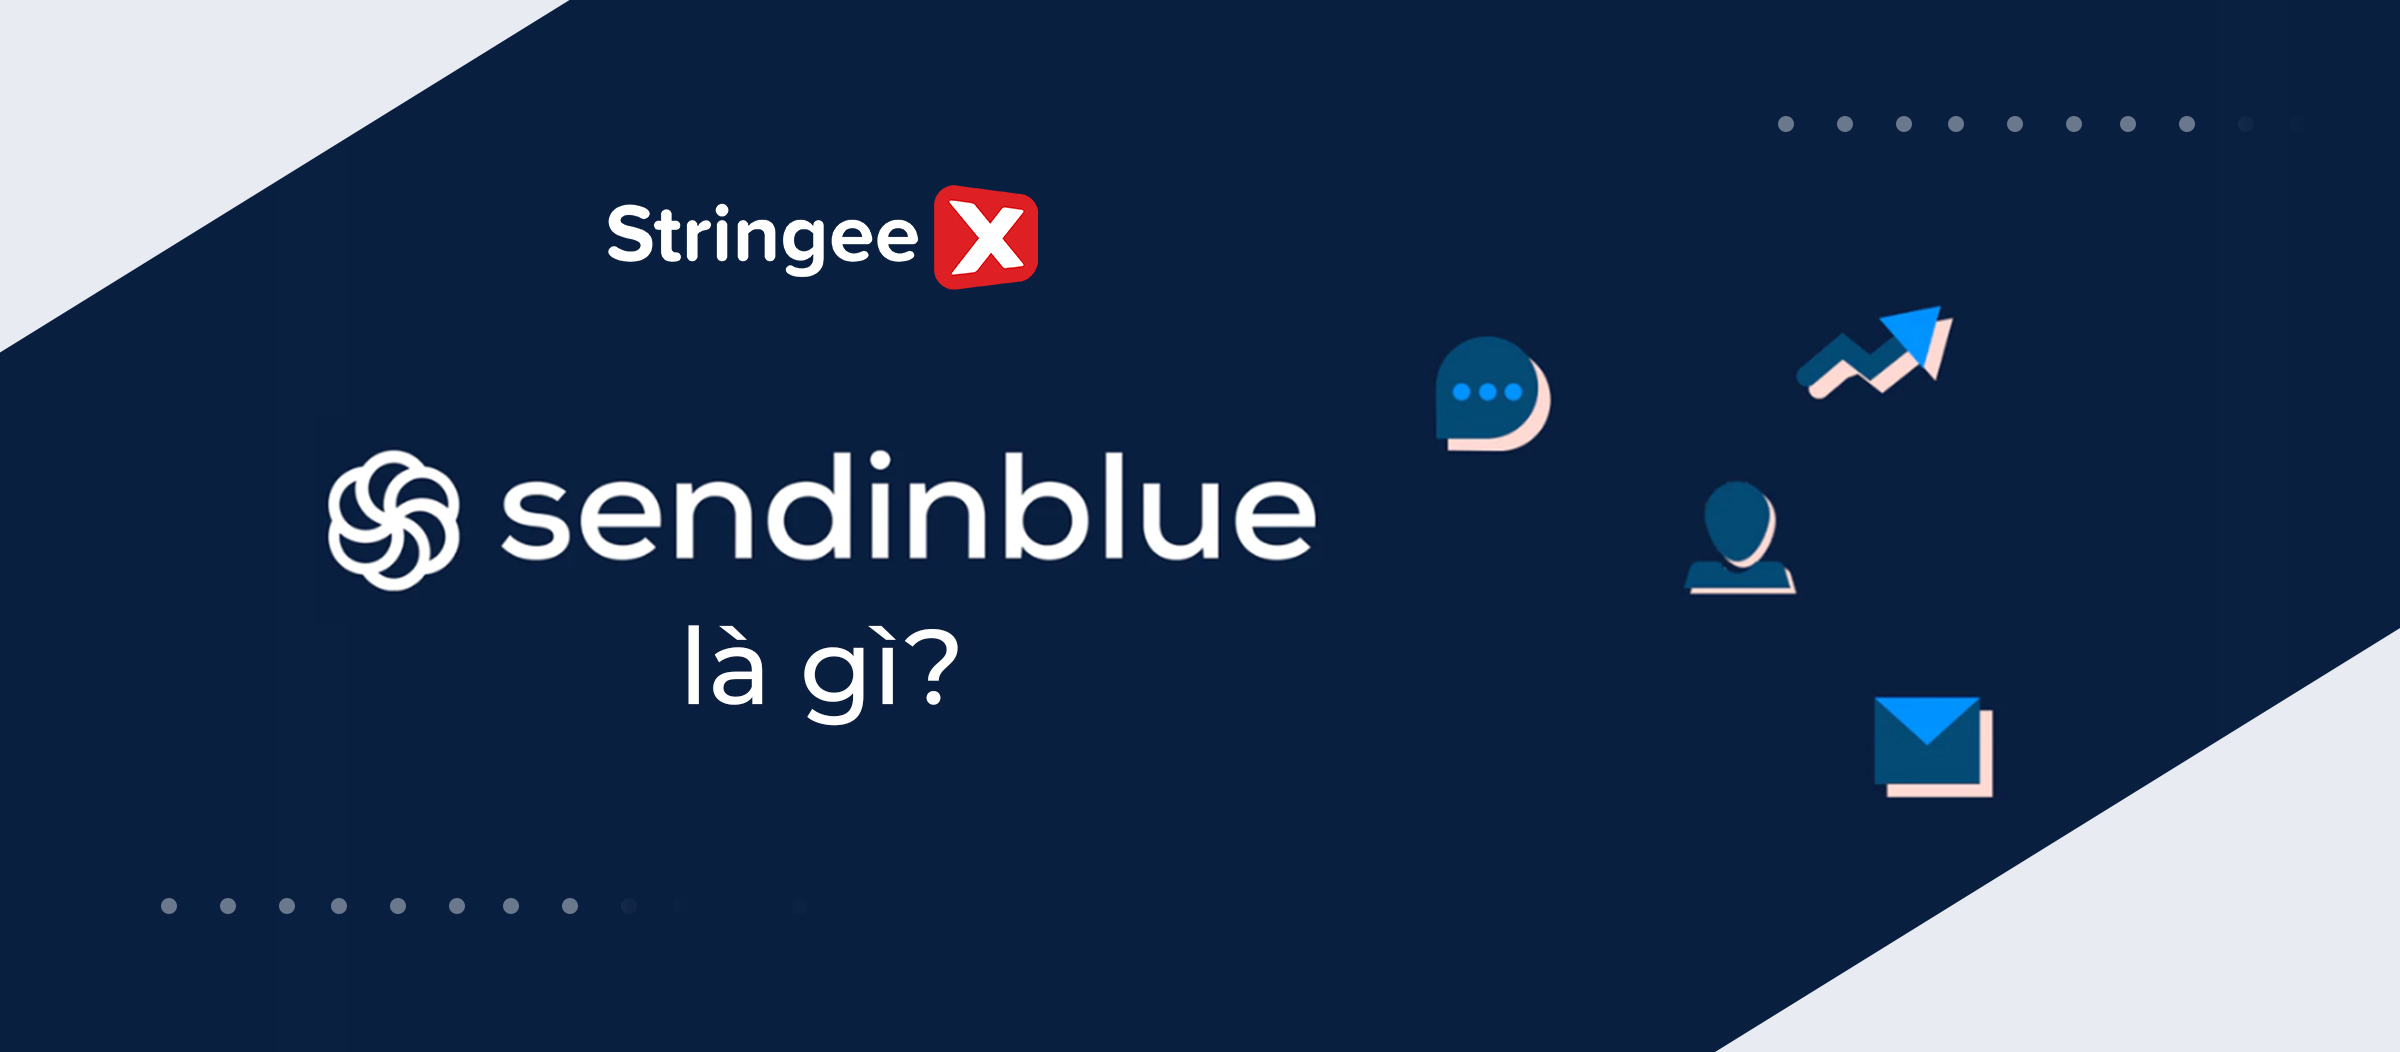 Sendinblue là gì? Chi phí các gói dịch vụ của Sendinblue